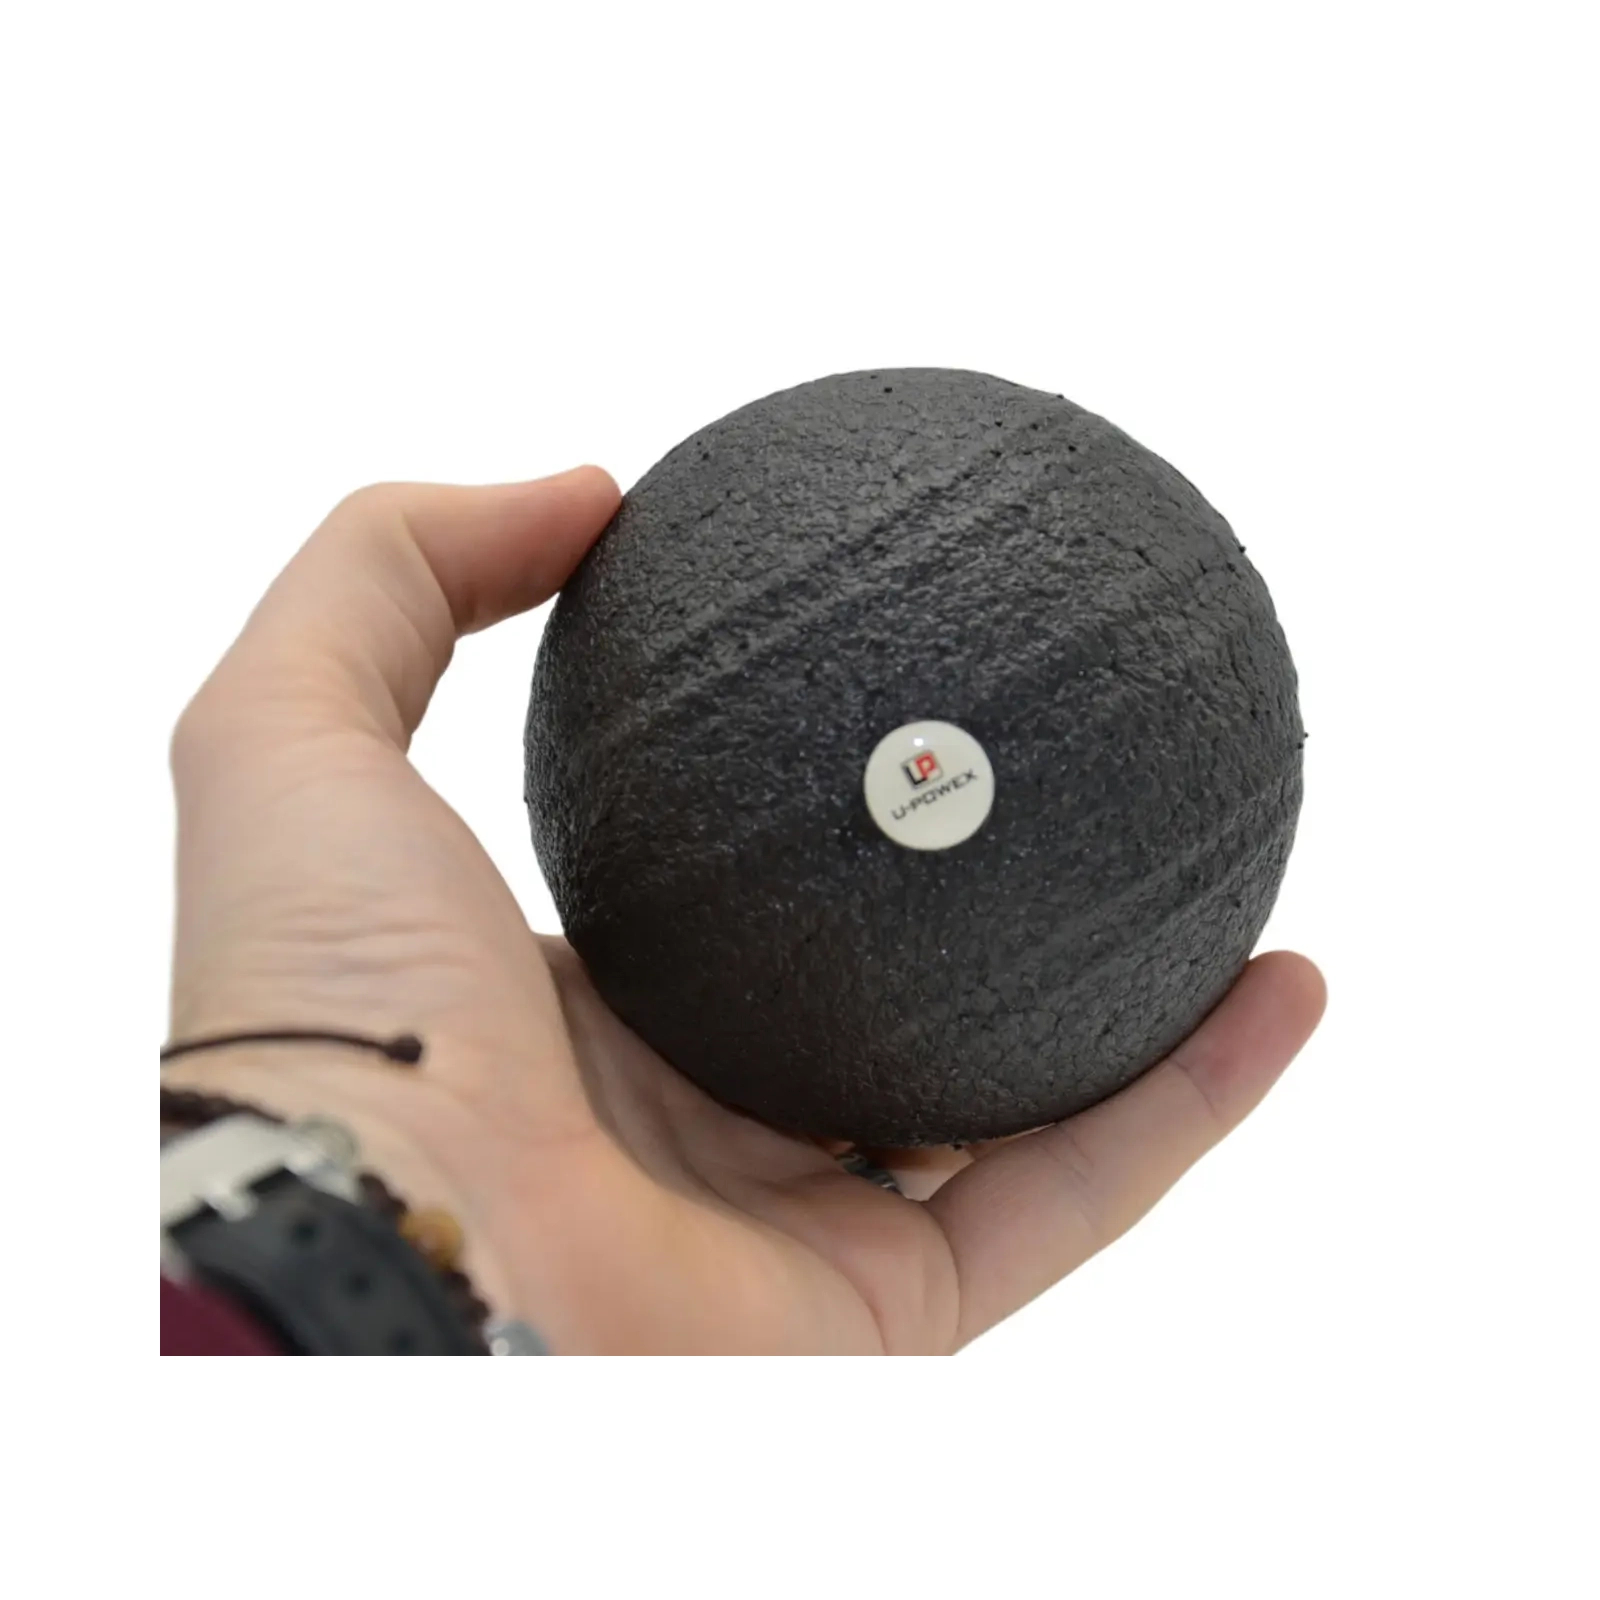 Массажный мяч U-Powex Epp foam ball d10 Black (UP_1003_Ball_D10cm) изображение 6